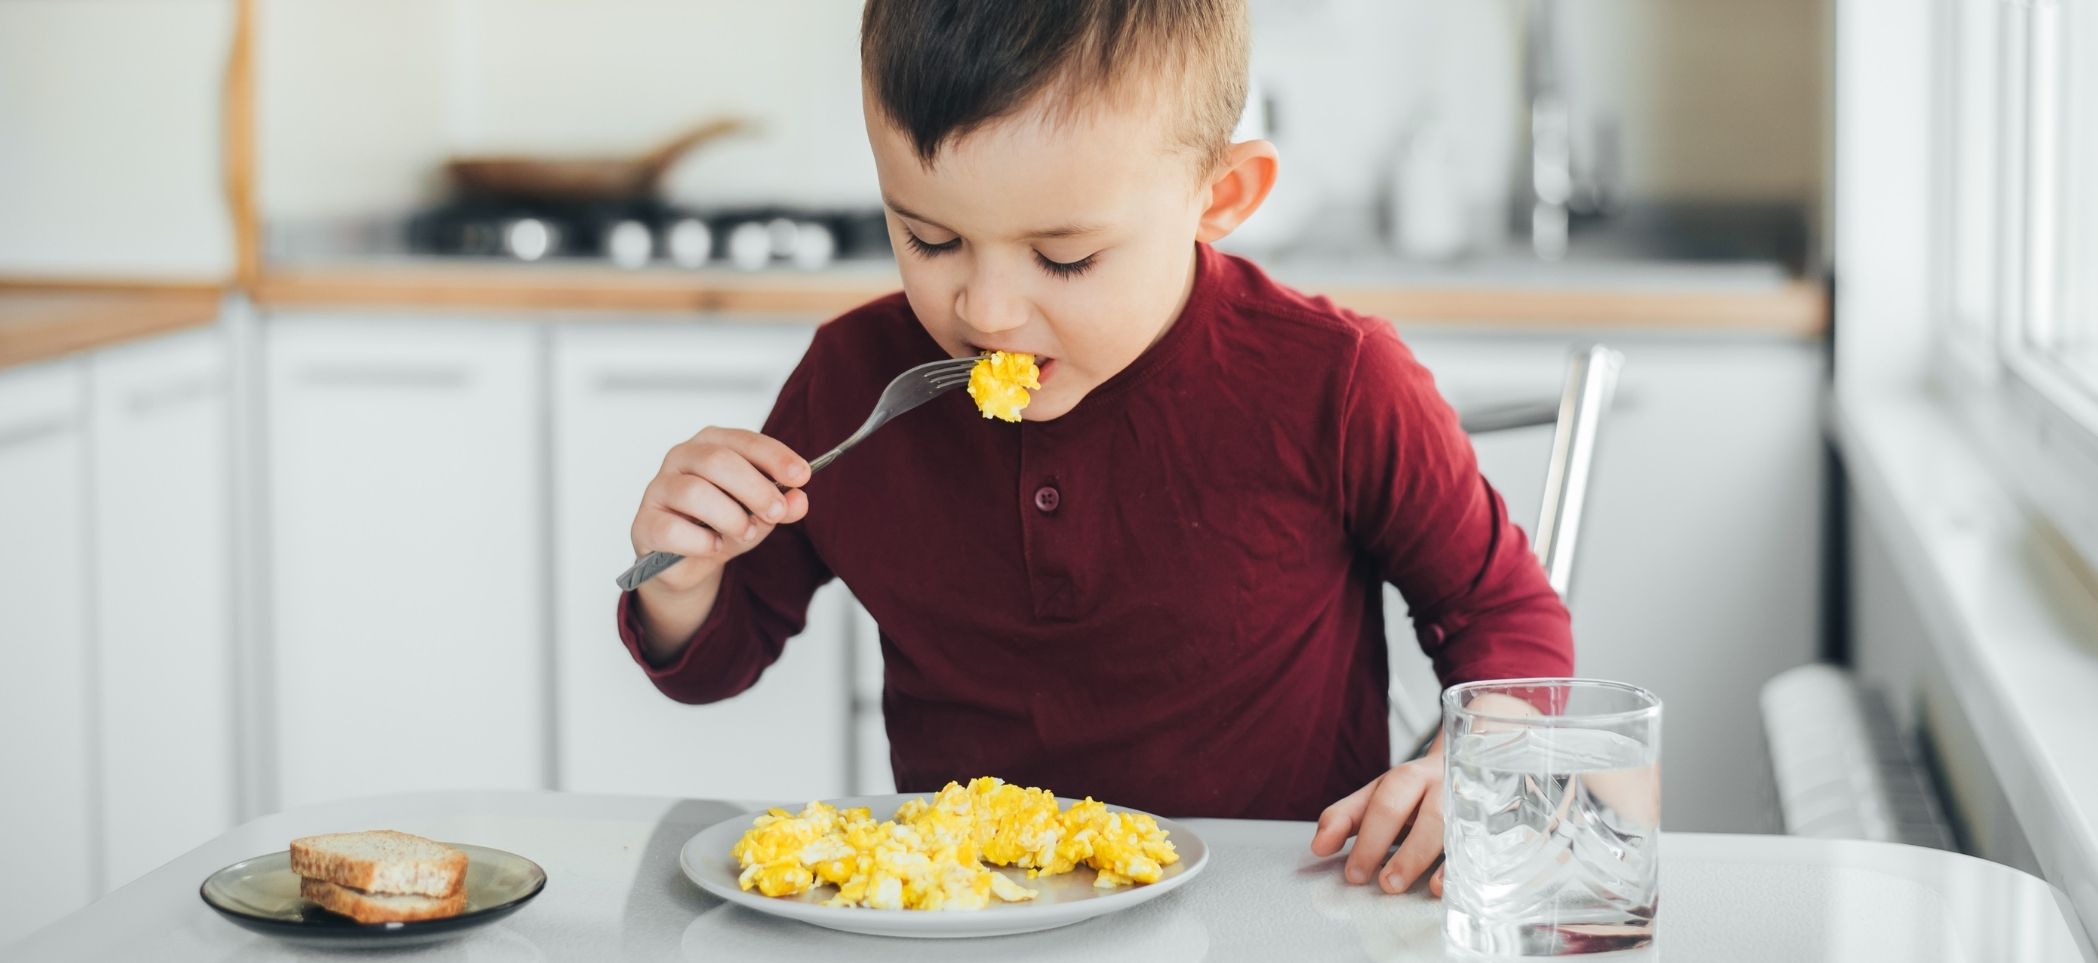 a child eats scrambled eggs